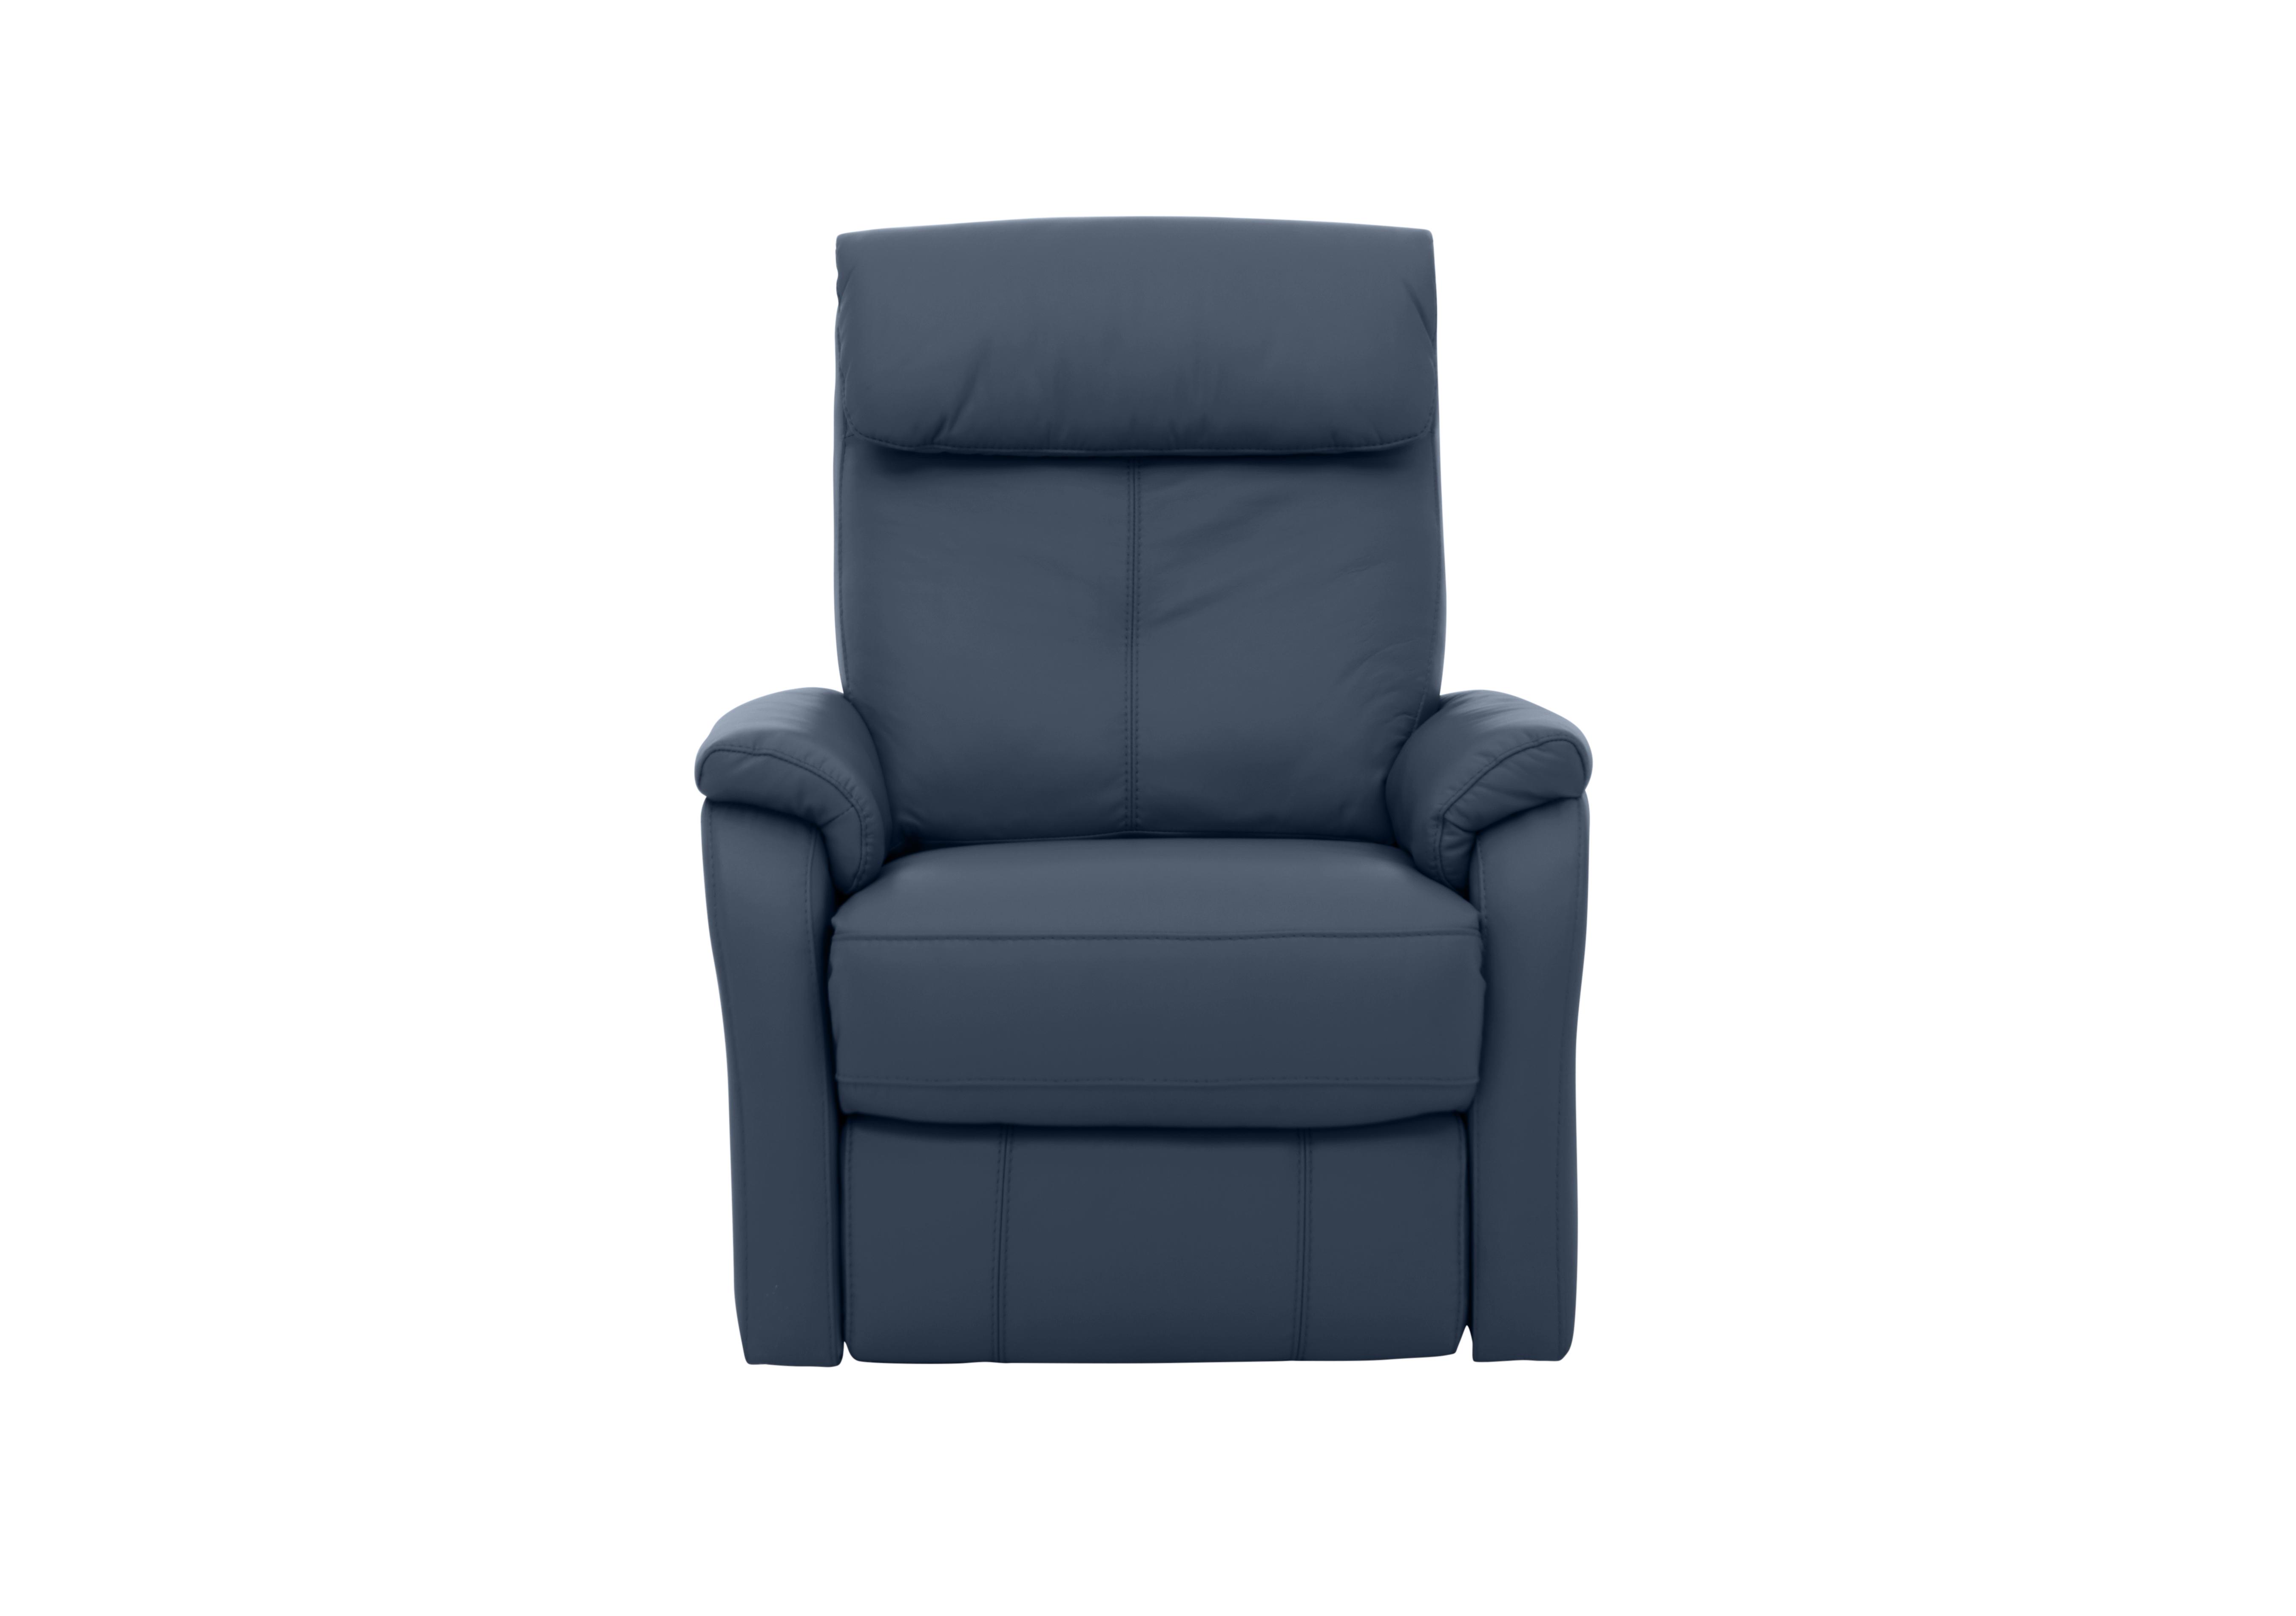 Rowan Leather Swivel Rocker Recliner Armchair in Bv-313e Ocean Blue on Furniture Village